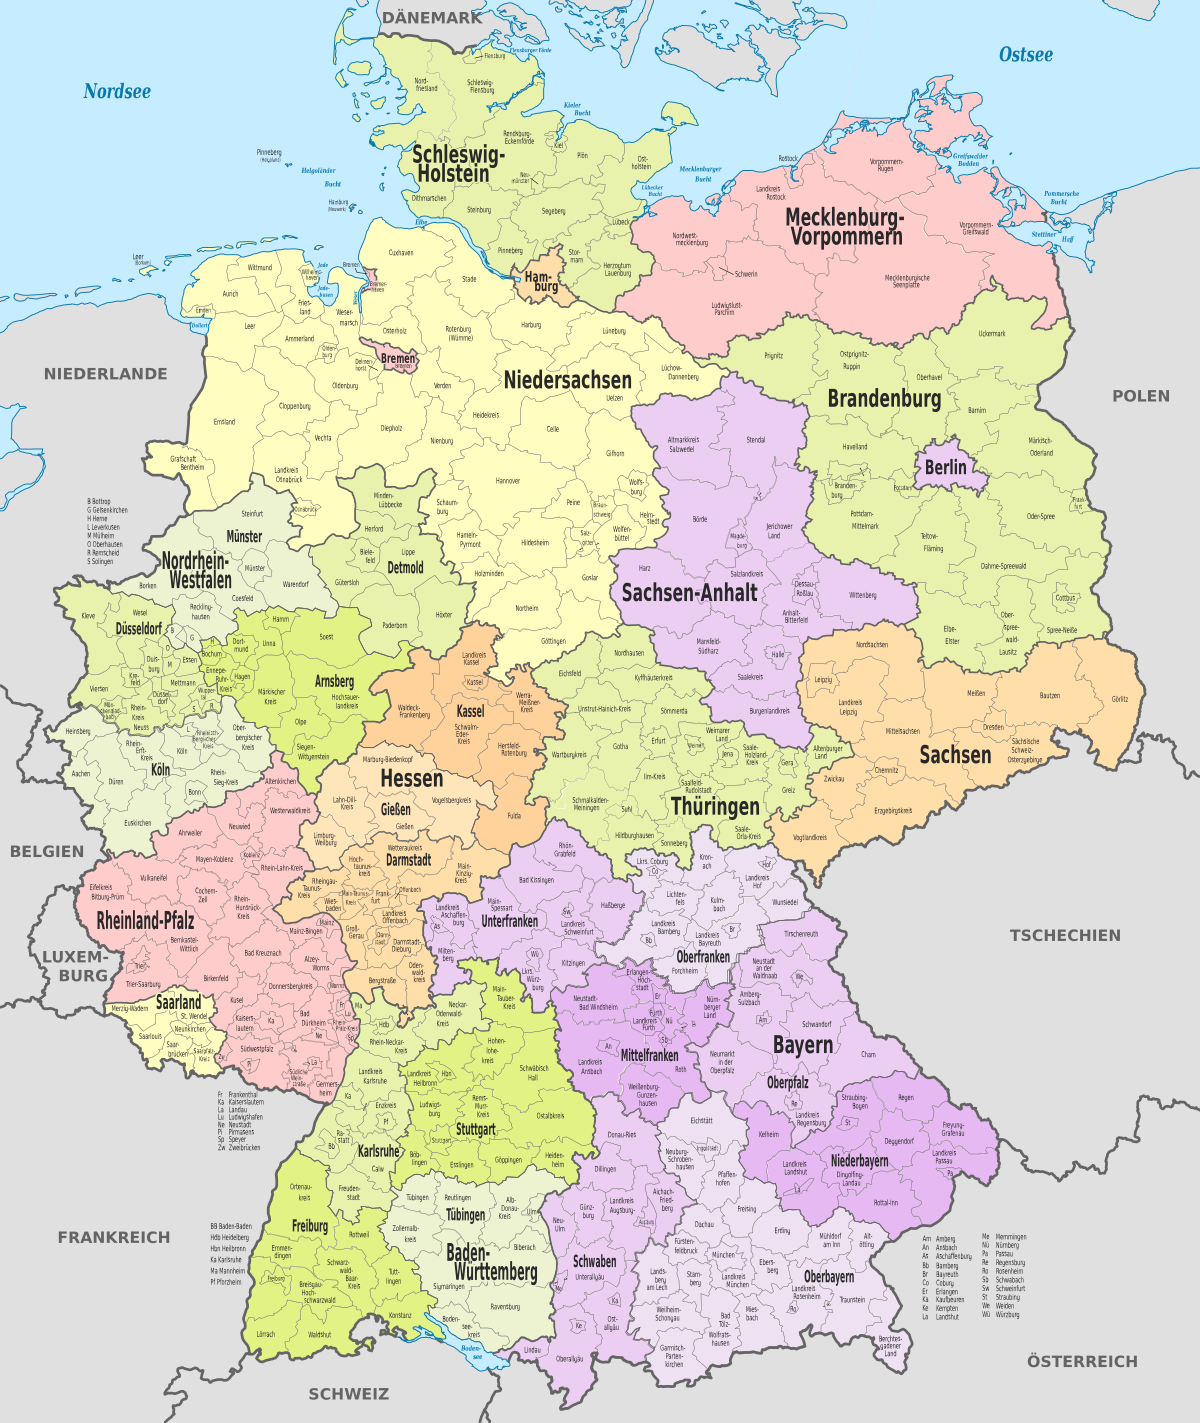 regionális ismerkedés baden württemberg